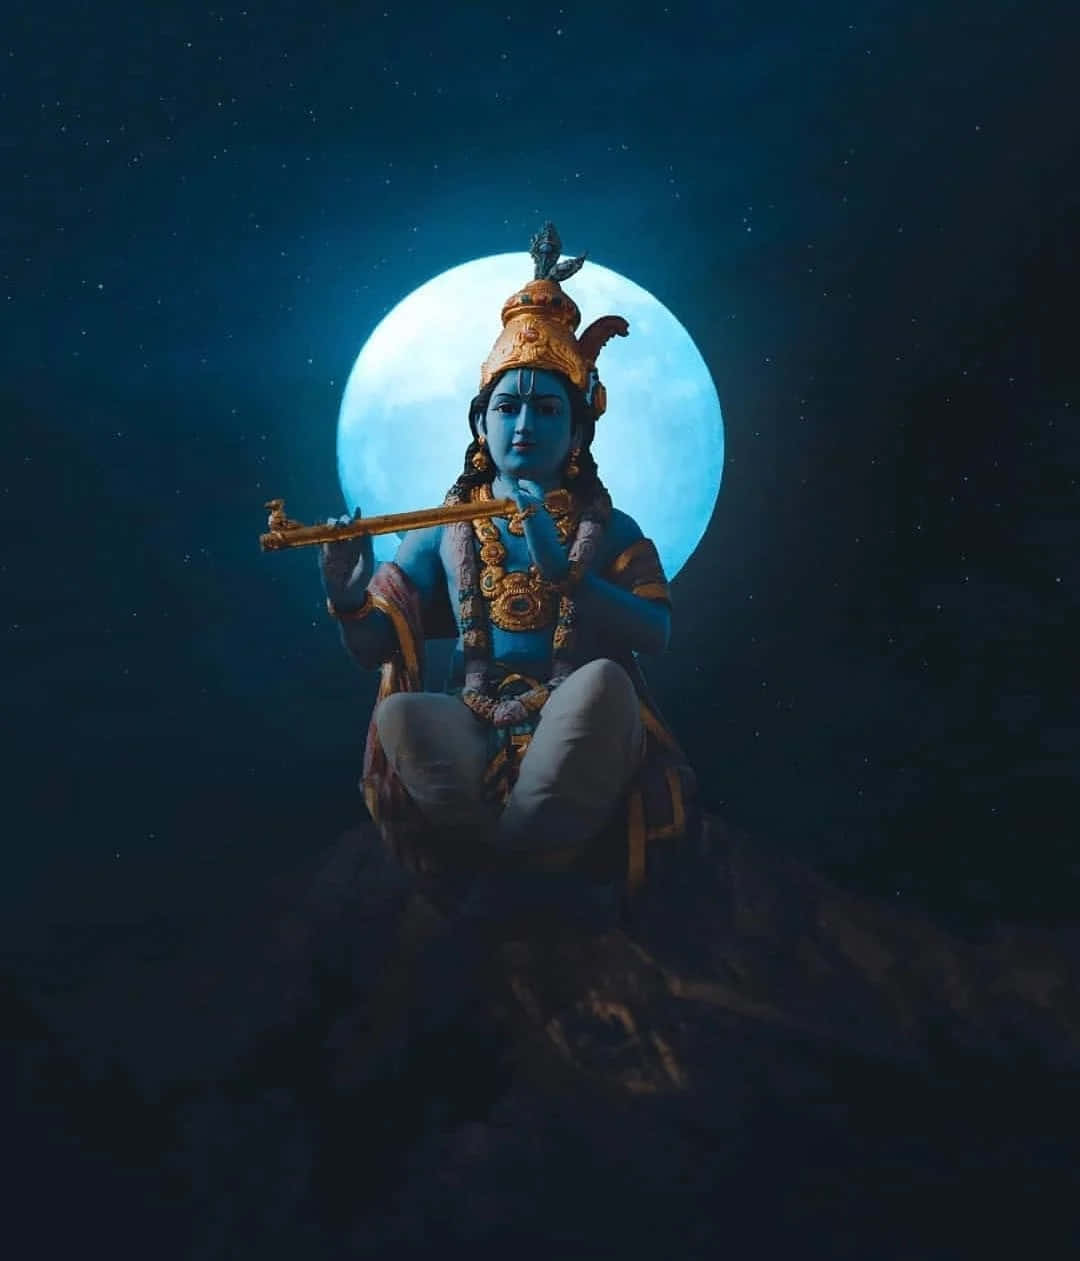 Radhaund Krishna Teilen Einen Wunderschönen Moment.